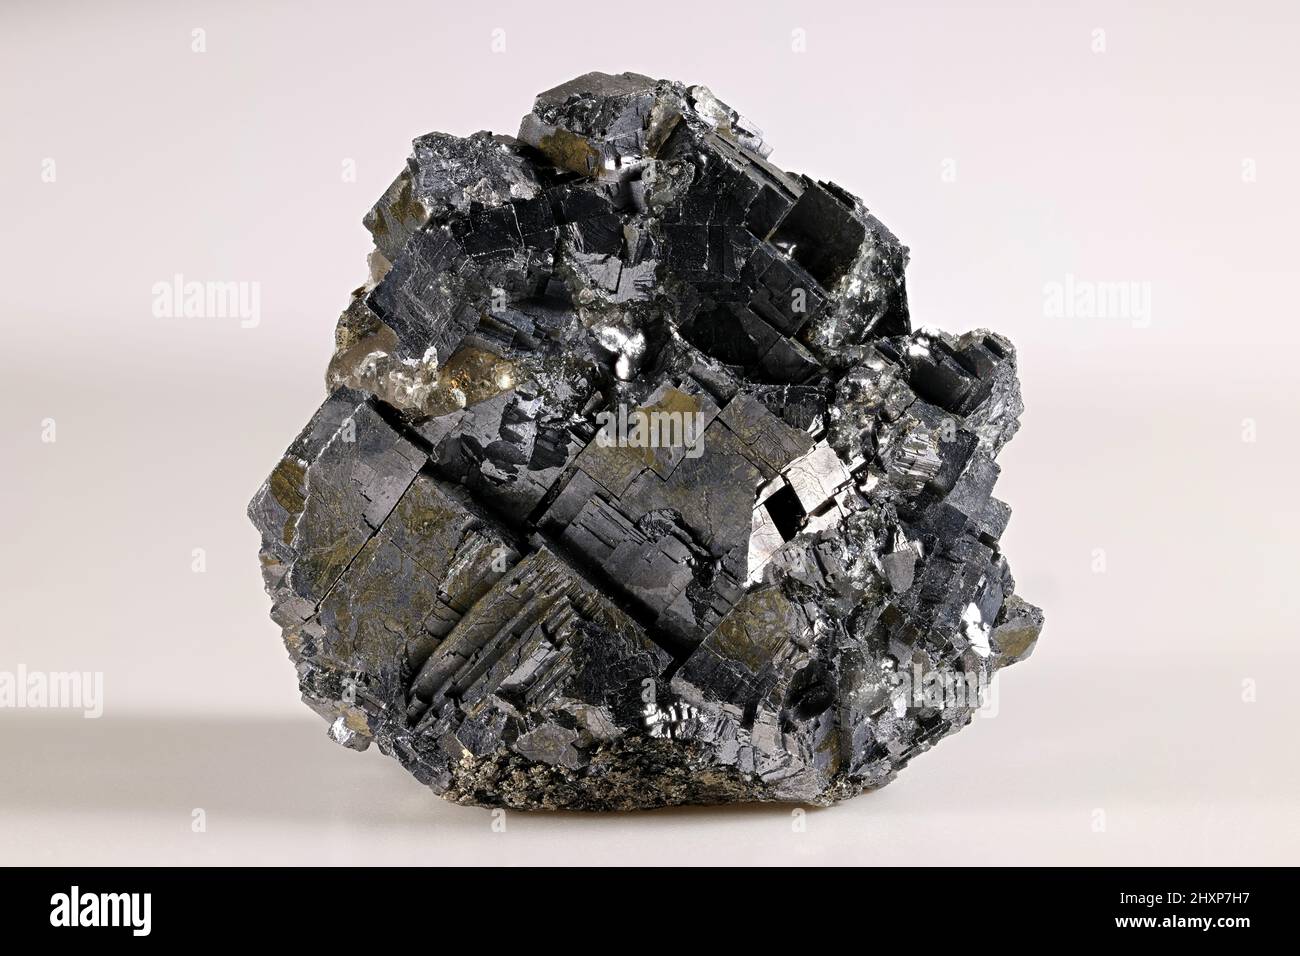 Kristalle von Galena, auch Bleiglanz genannt. Galena ist das wichtigste industrielle Bleierz. Stockfoto